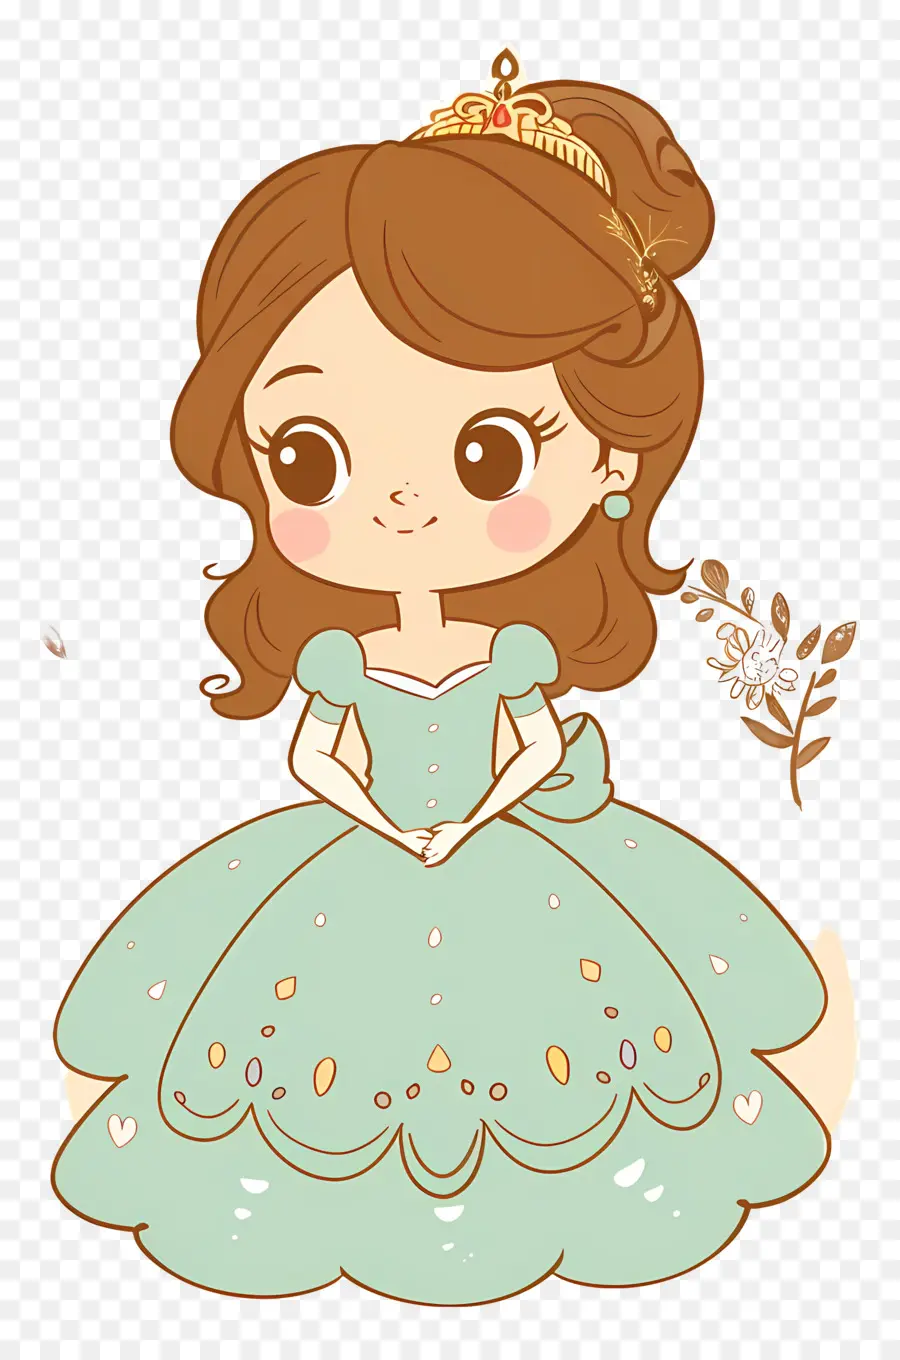 Prinzessin Sofia Cartoon Charakter Mädchen grünes Kleid langes braunes Haar - Cartoon Mädchen in grünem Kleid lächelnd